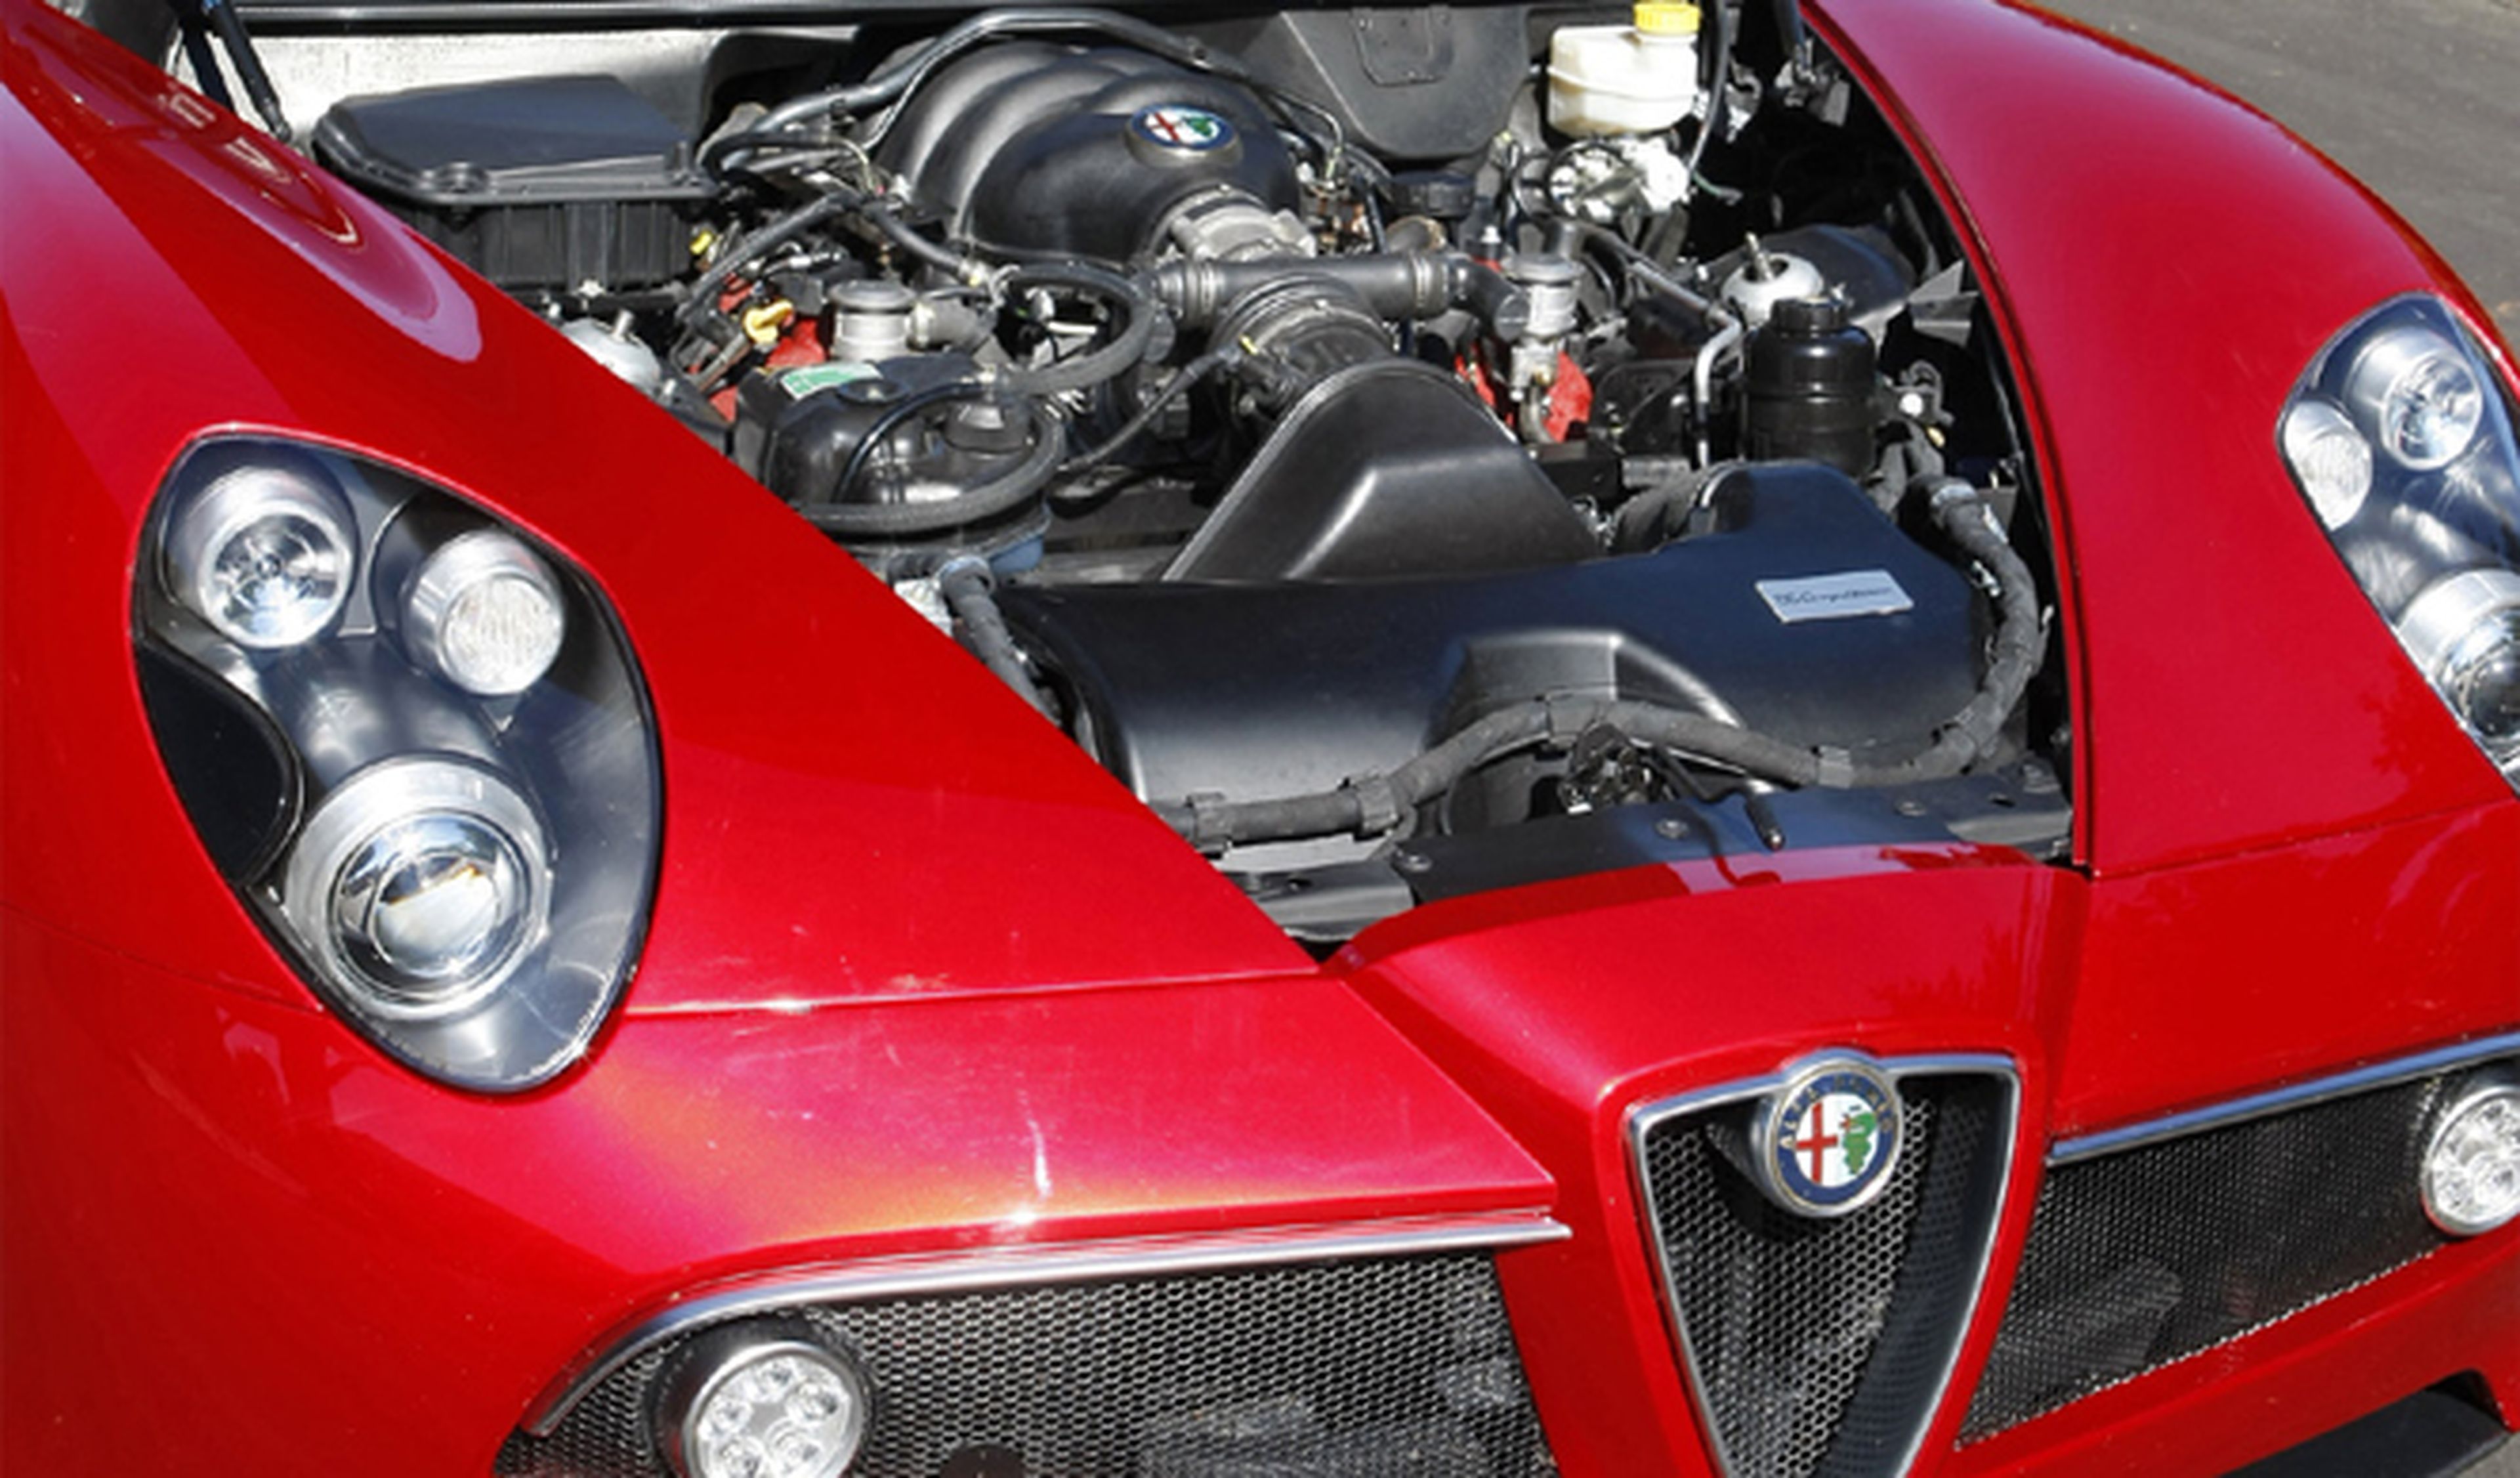 Alfa Romeo prepara dos motores de altas prestaciones